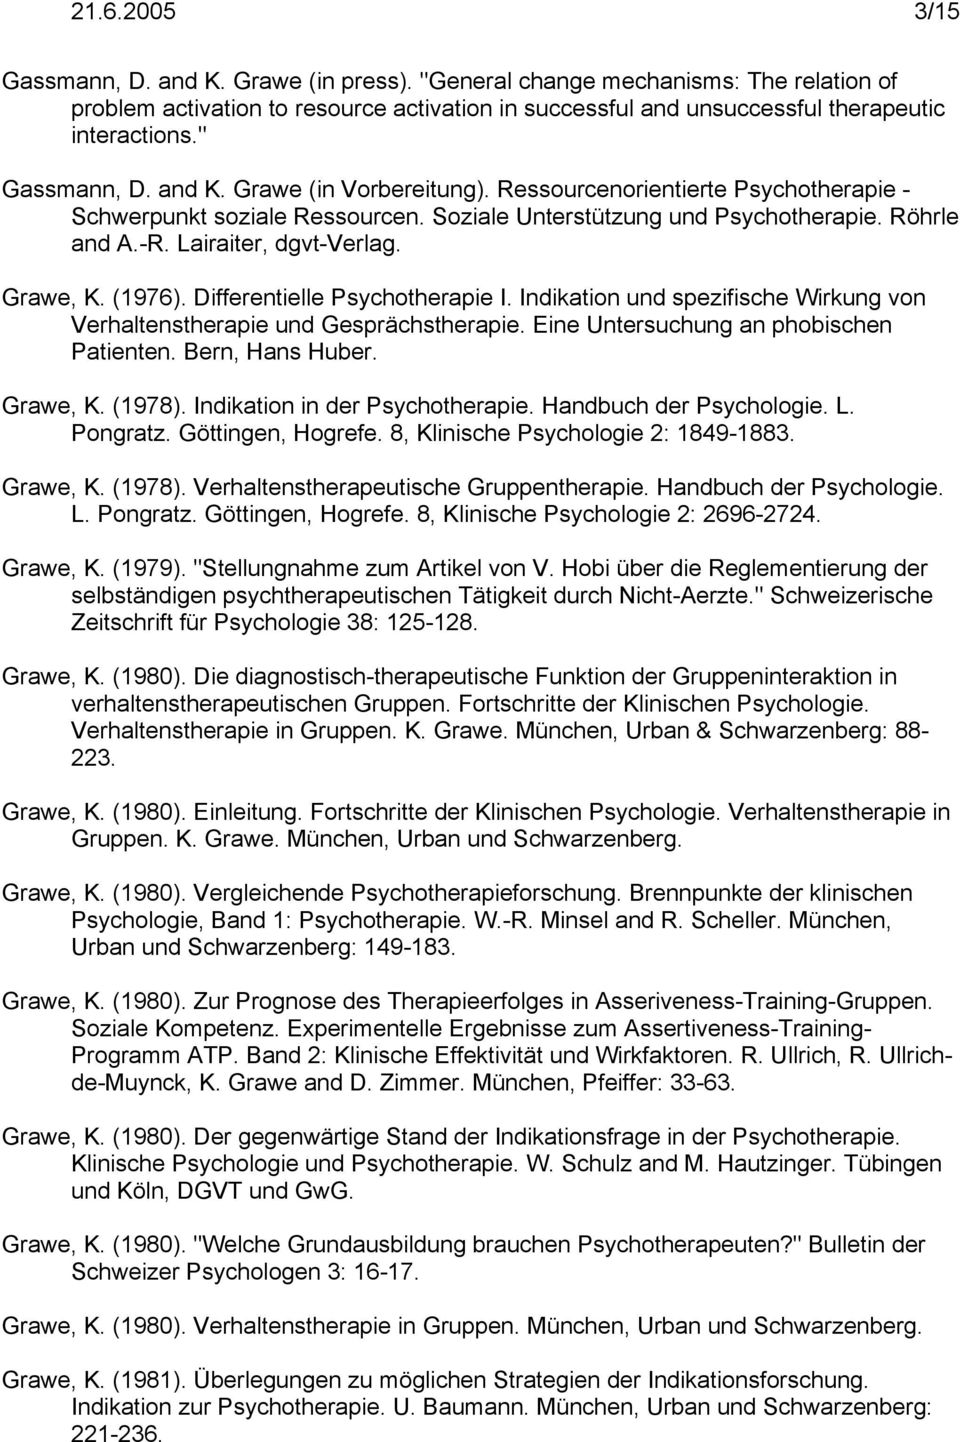 Grawe, K. (1976). Differentielle Psychotherapie I. Indikation und spezifische Wirkung von Verhaltenstherapie und Gesprächstherapie. Eine Untersuchung an phobischen Patienten. Bern, Hans Huber.